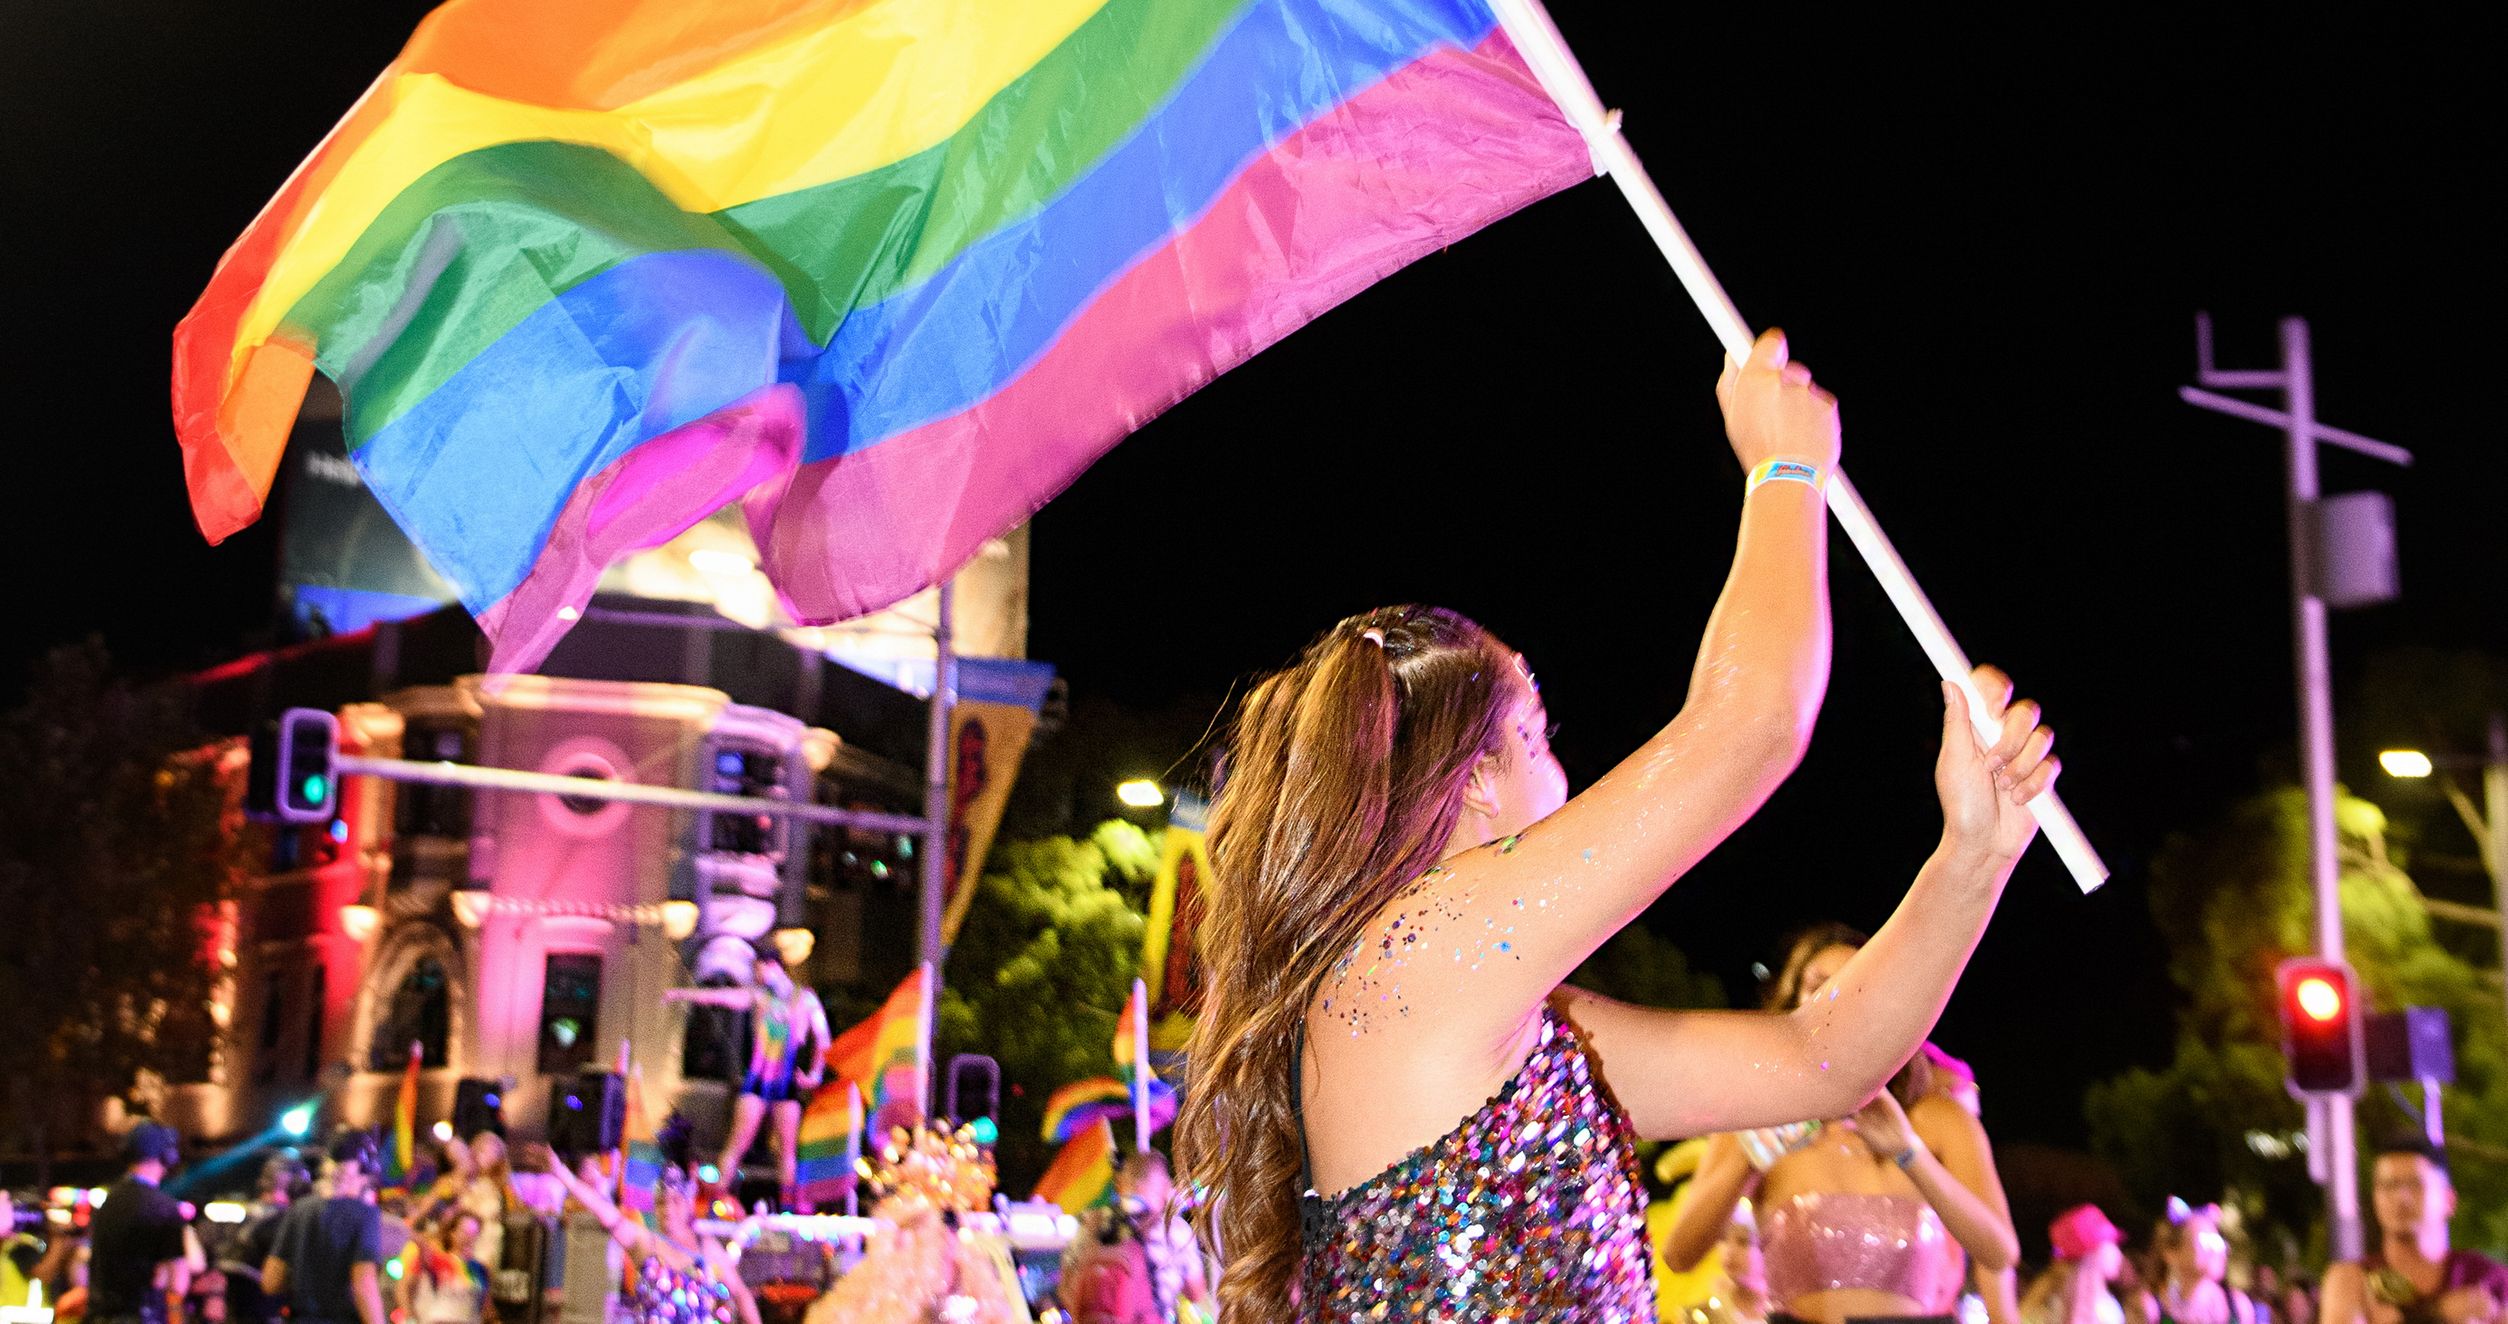 Sydney Gay and Lesbian Mardi Gras announces formal bid for WorldPride 2023